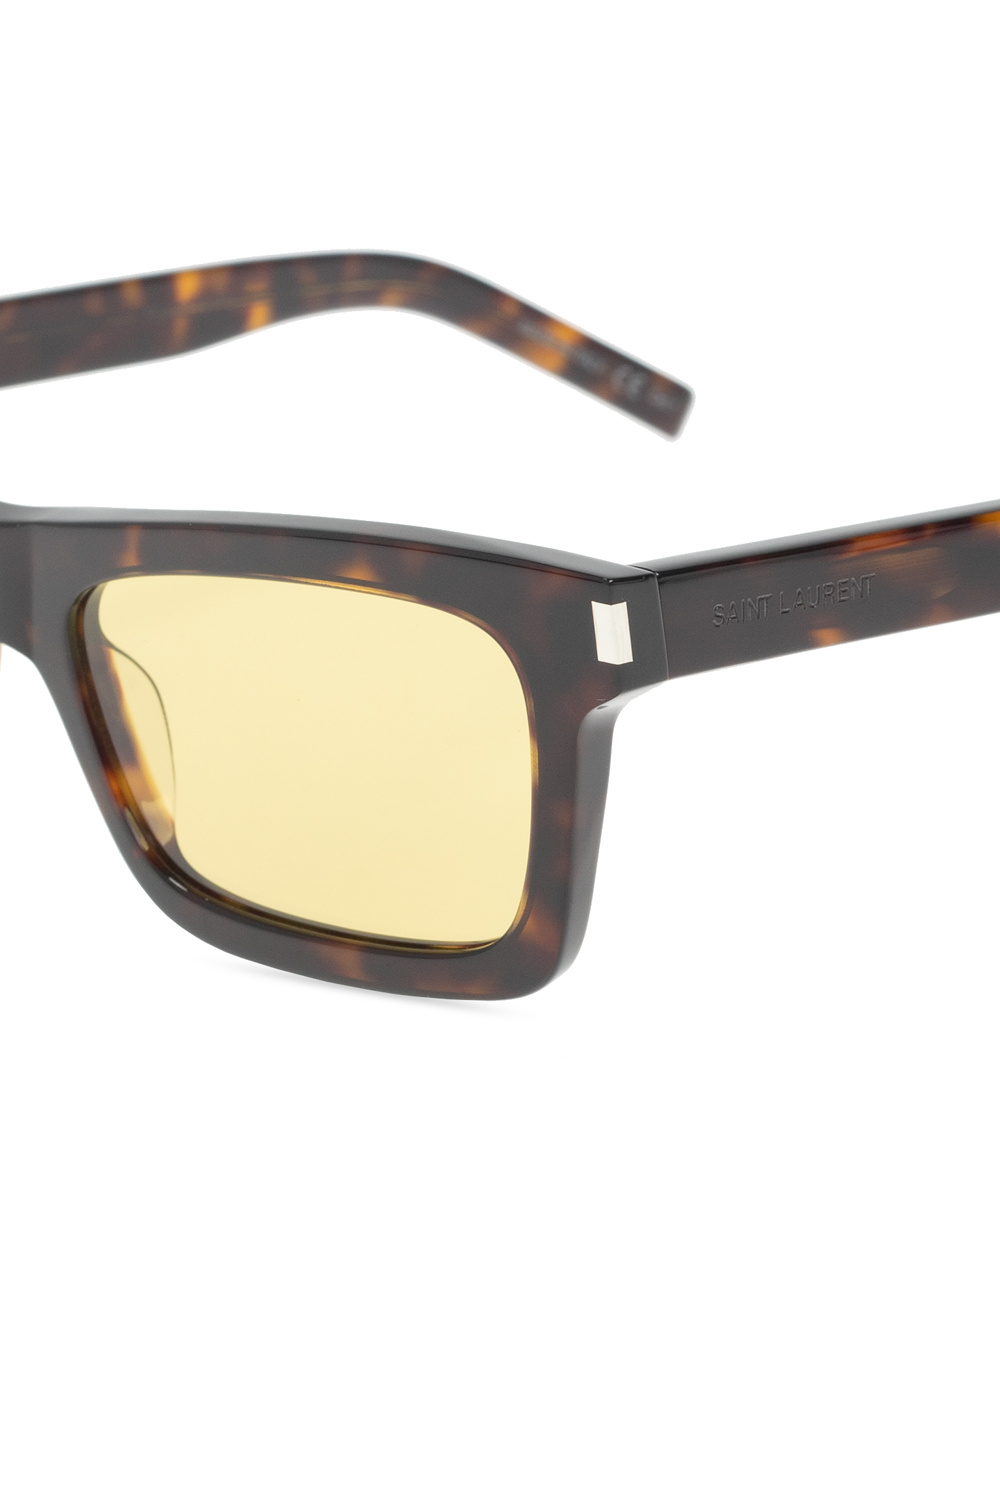 Saint Laurent Sunglasses with case